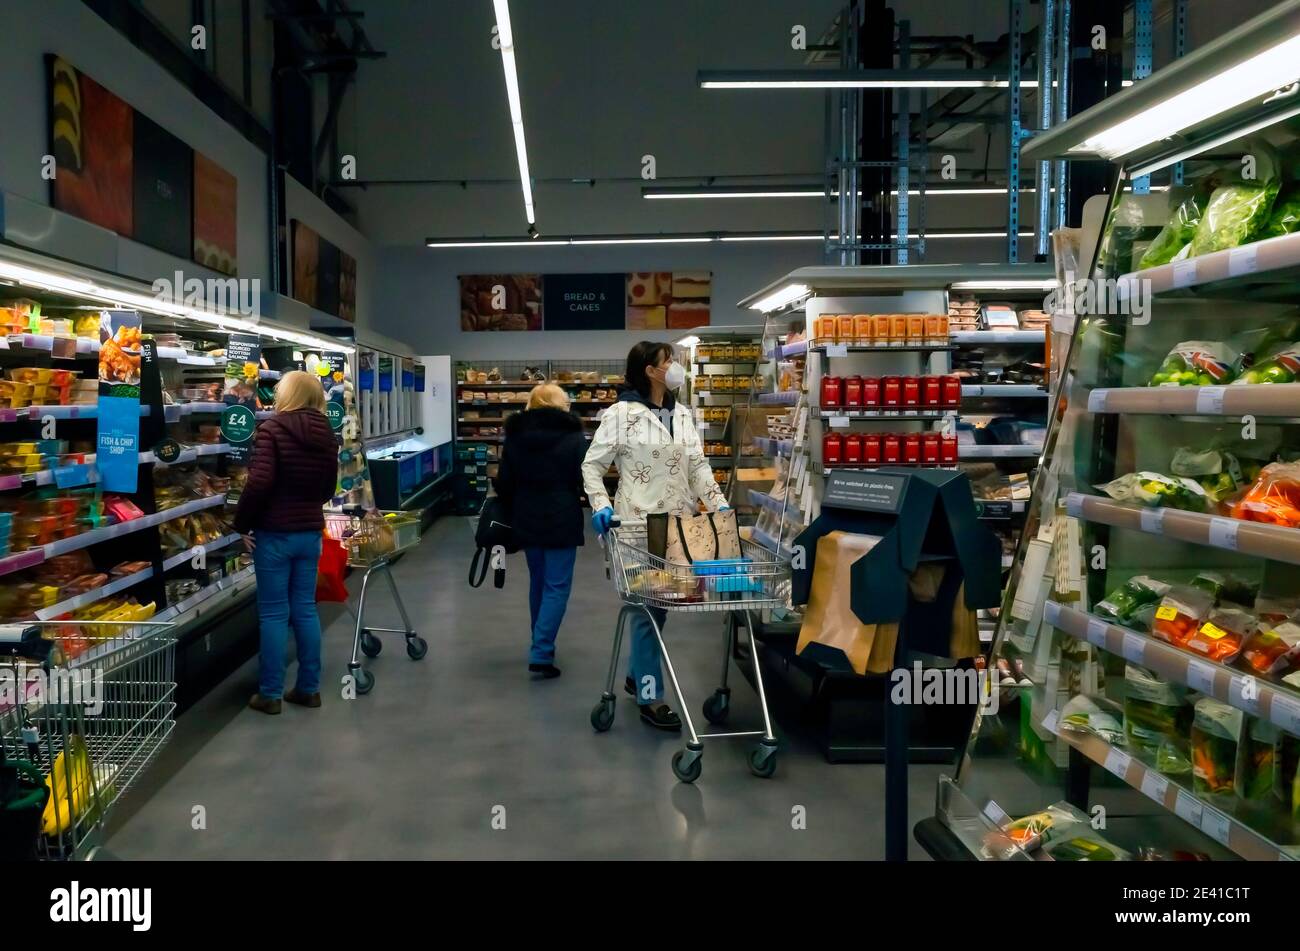 Esposizione supermercato di scaffali ben riforniti di cibi cotti surgelati frutta e verdura con tre donne che acquistano Foto Stock